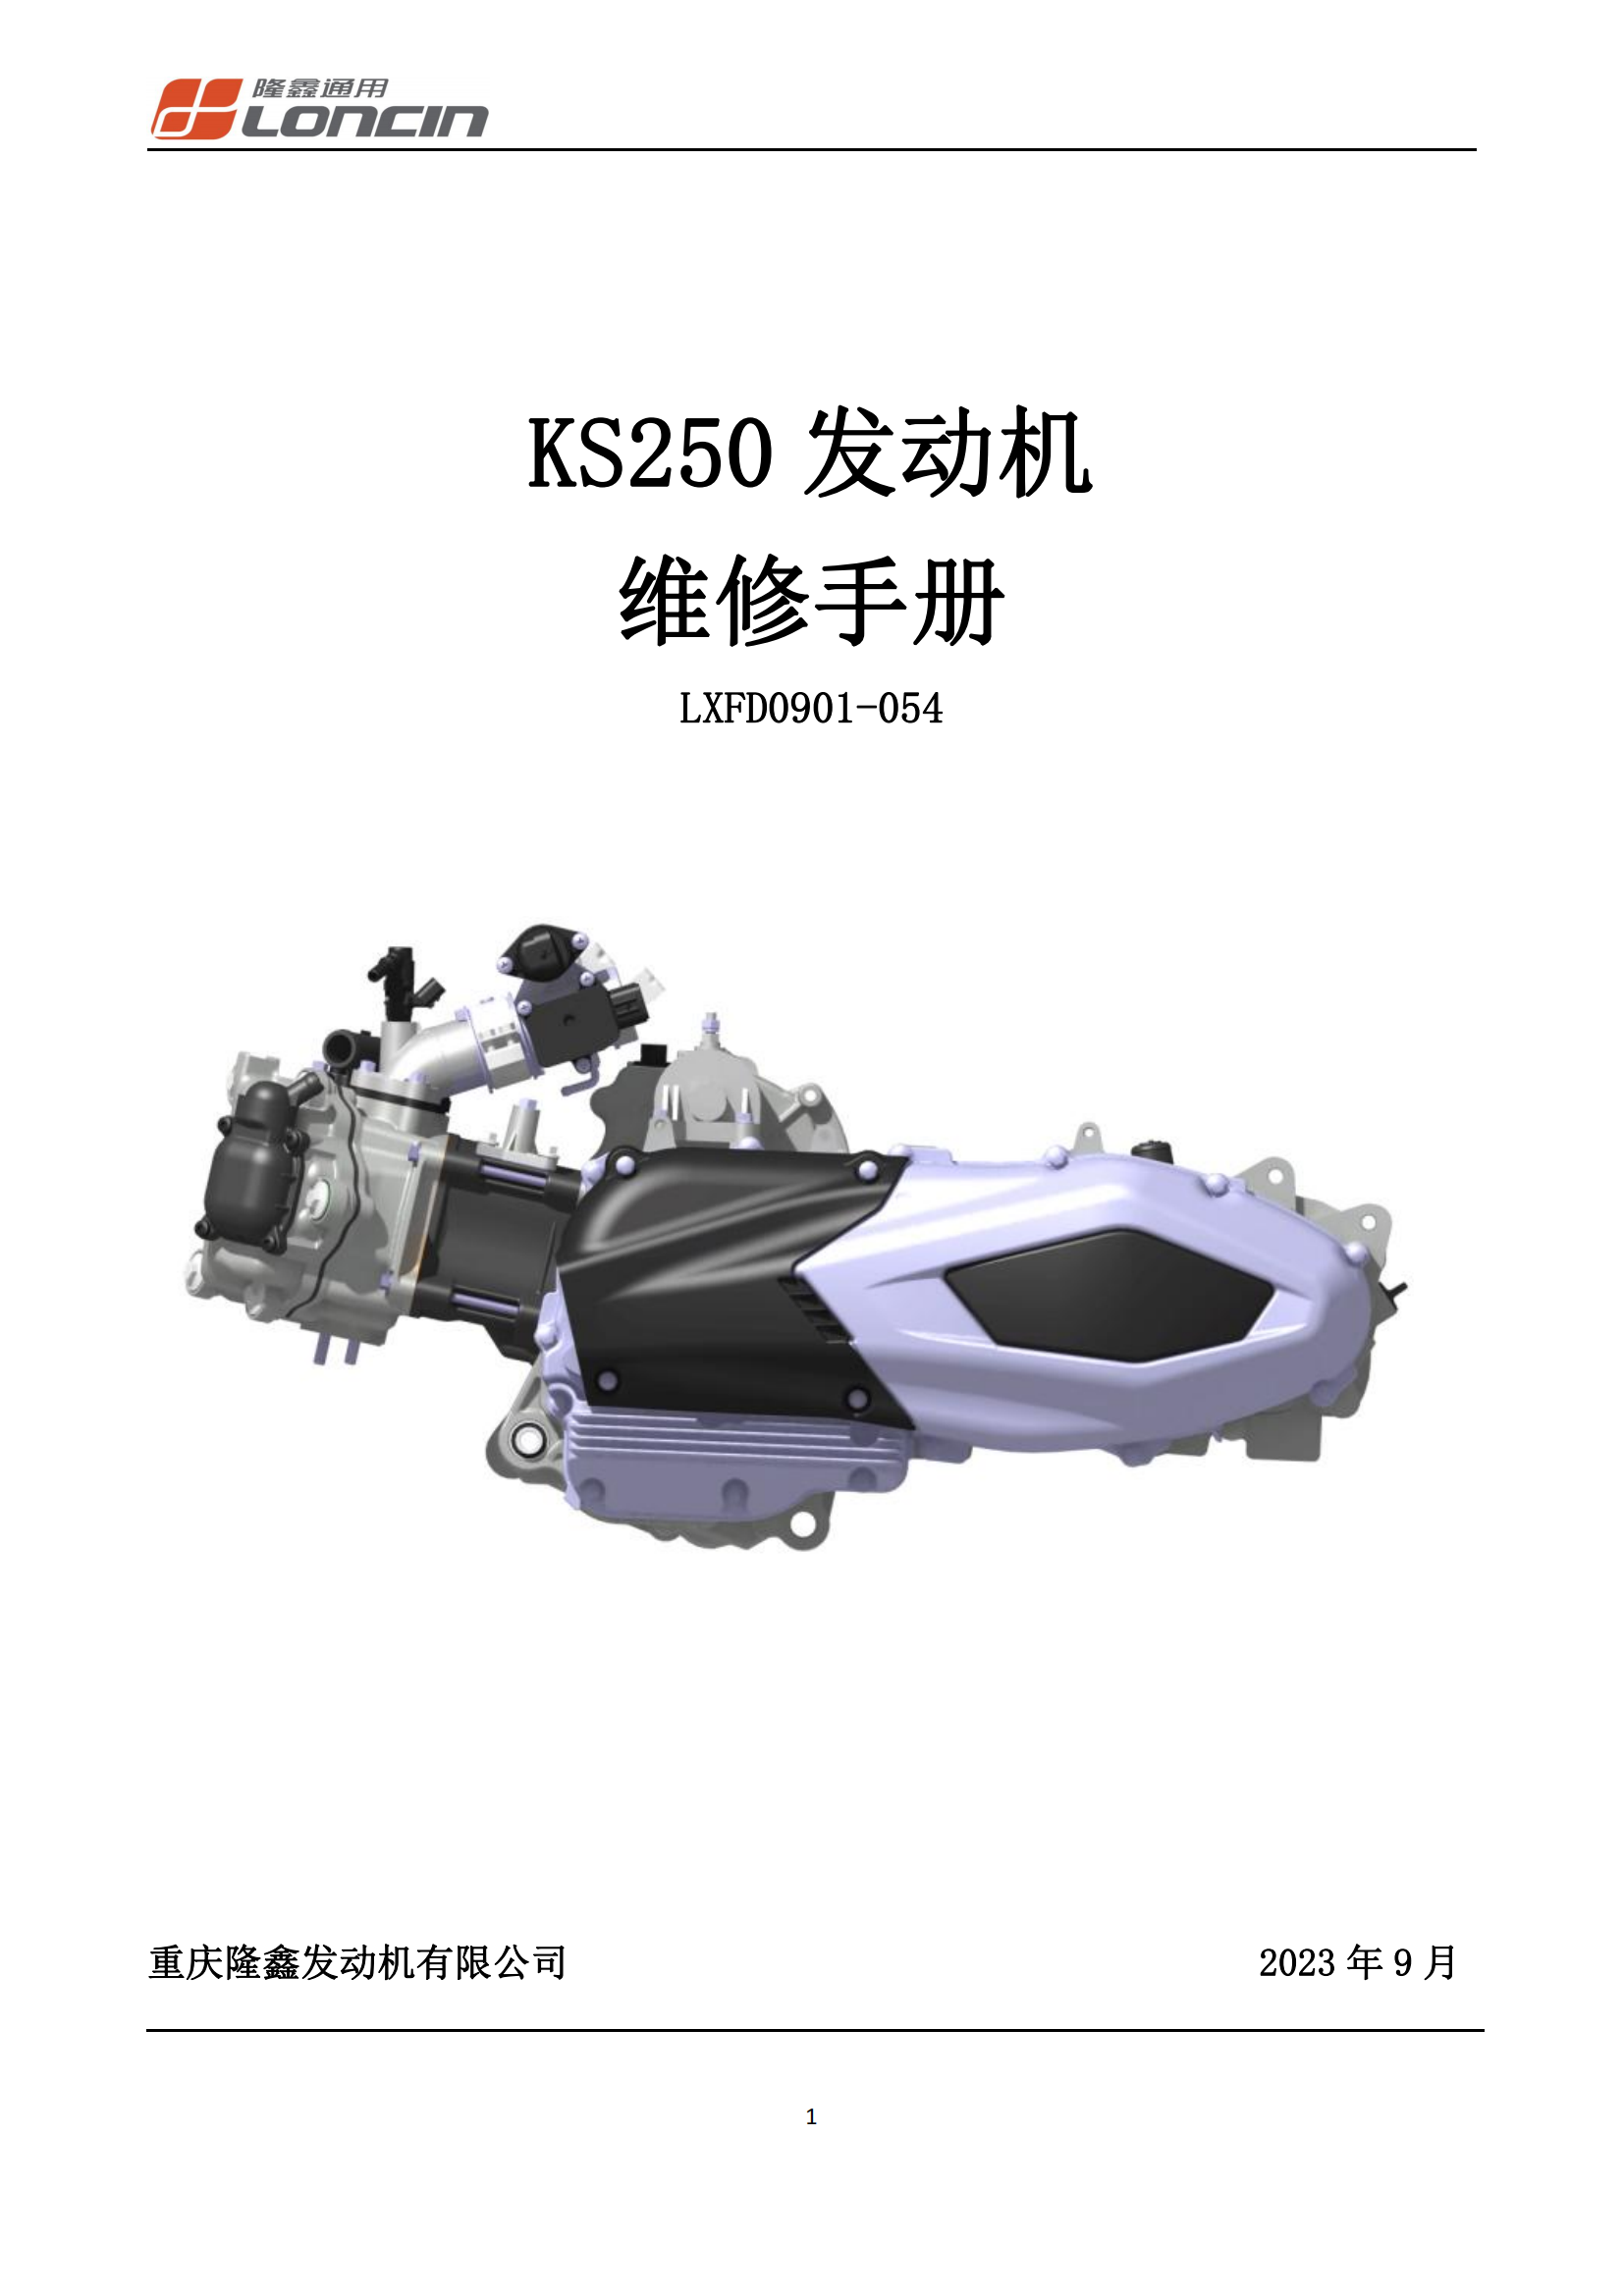 原版中文隆鑫无极SR250GT发动机KS250发动机维修手册插图